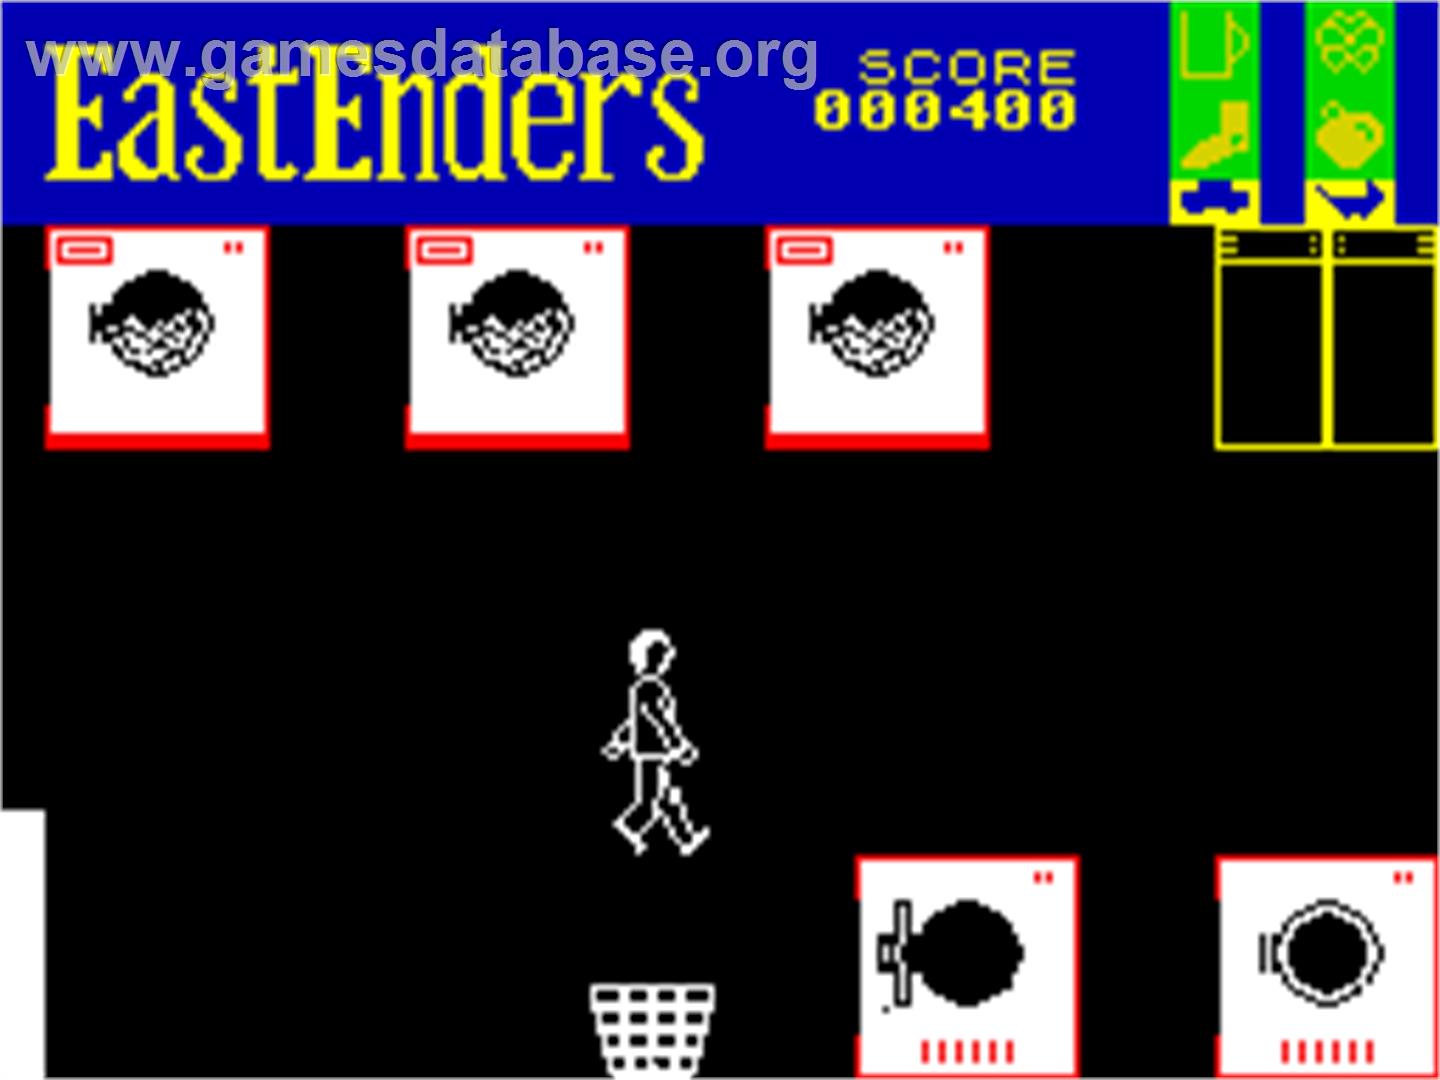 EastEnders - Sinclair ZX Spectrum - Artwork - In Game